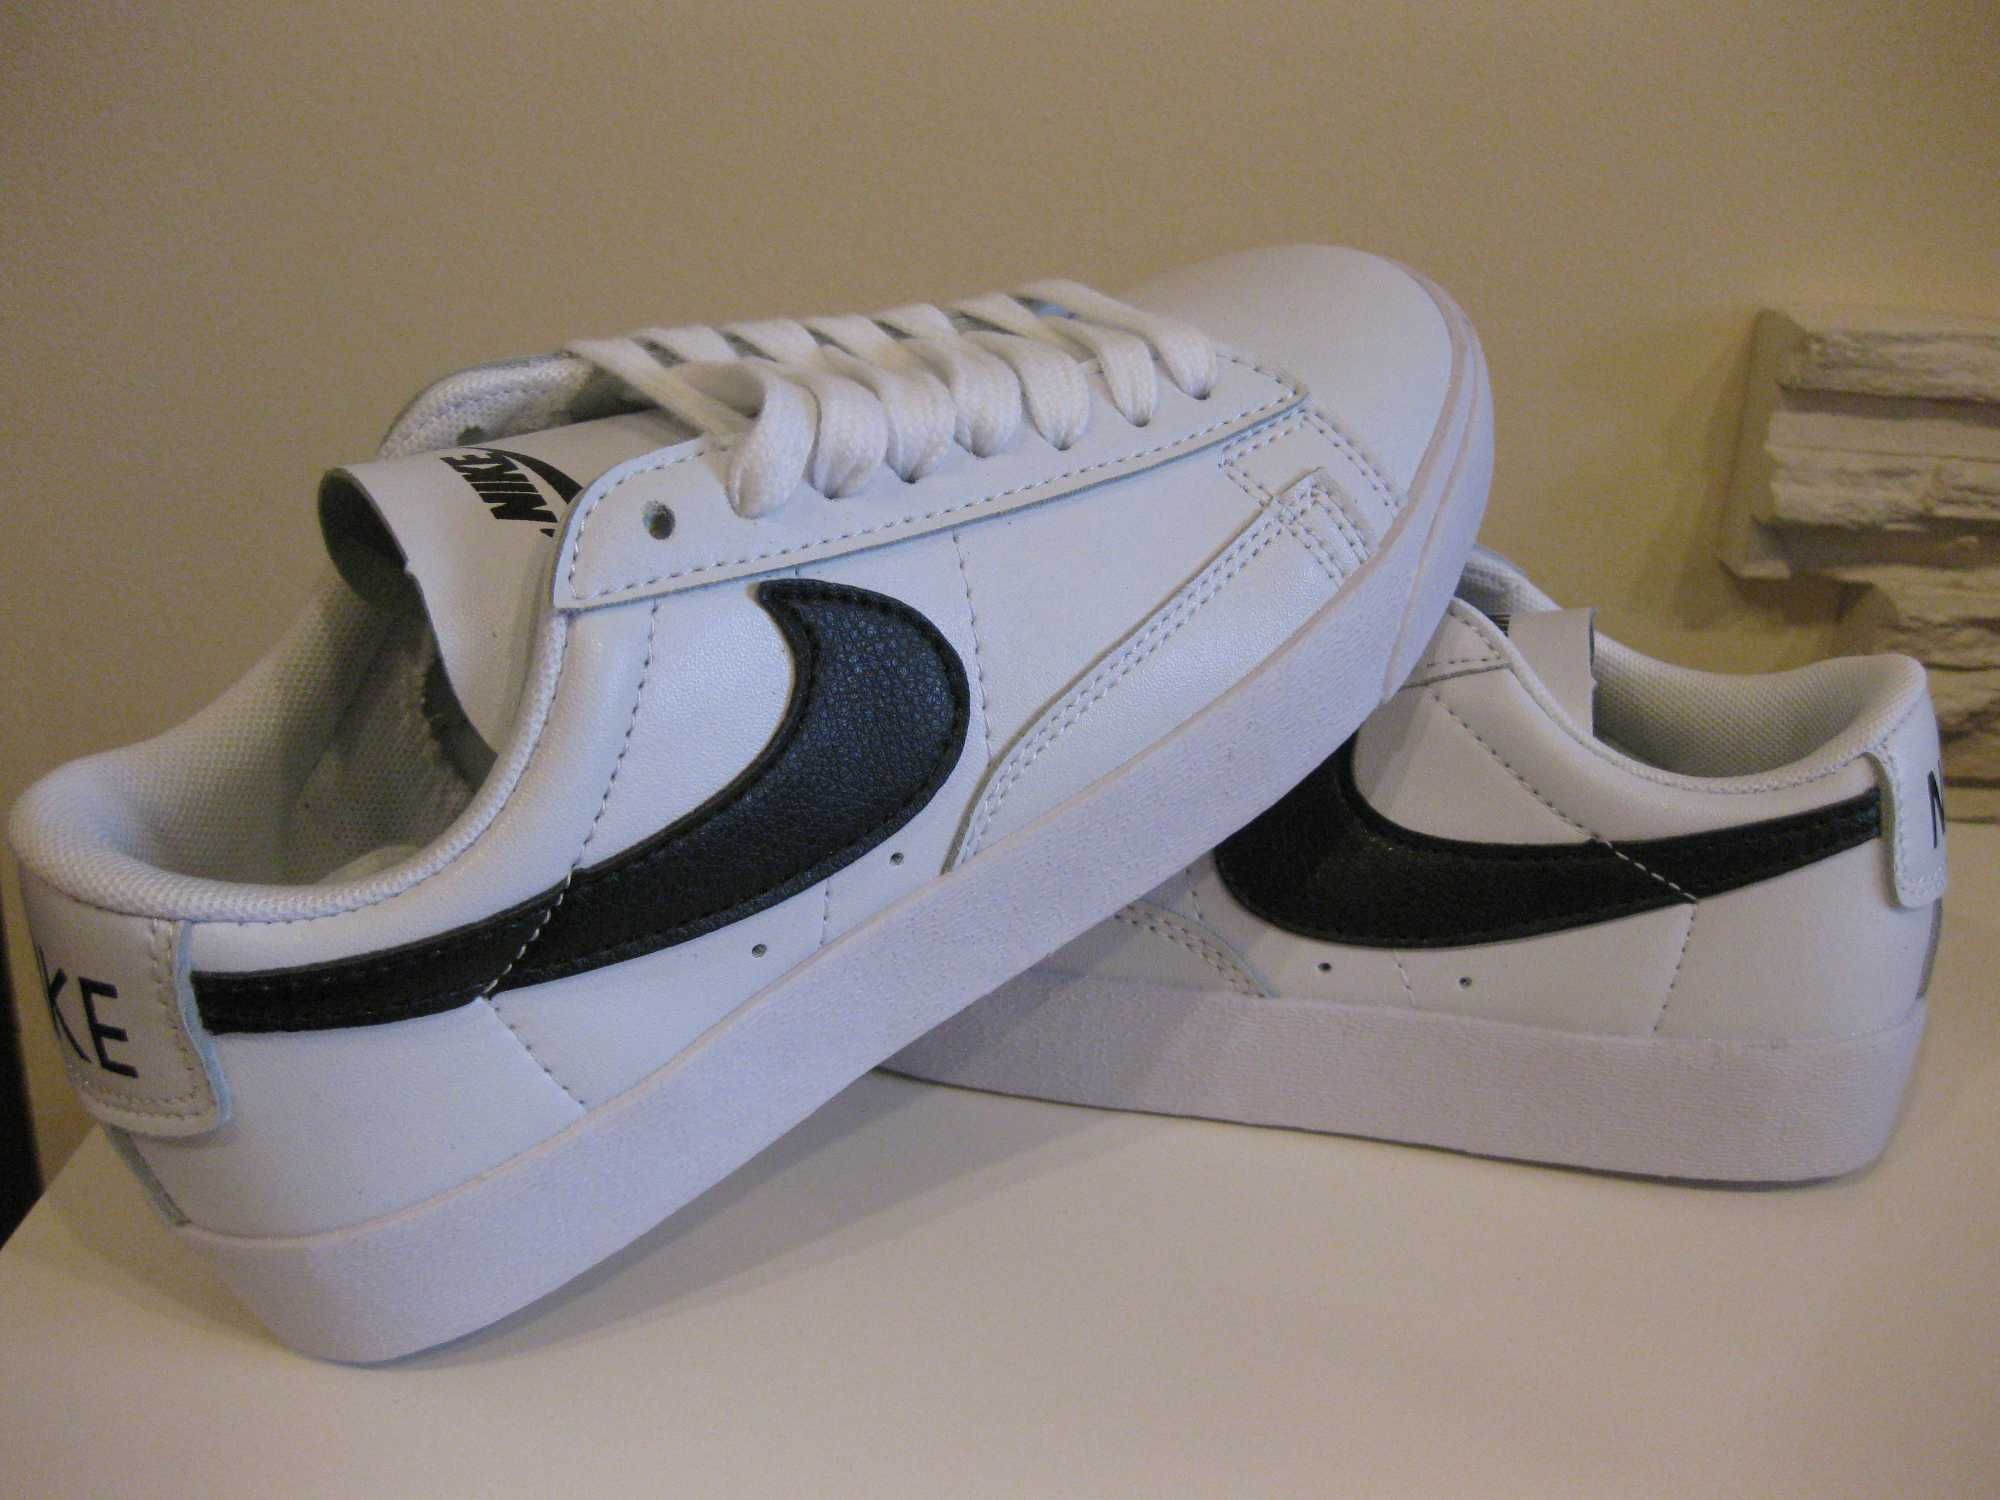 Nike Tennis Classic buty rozm.41 (dł.wkł.26cm)